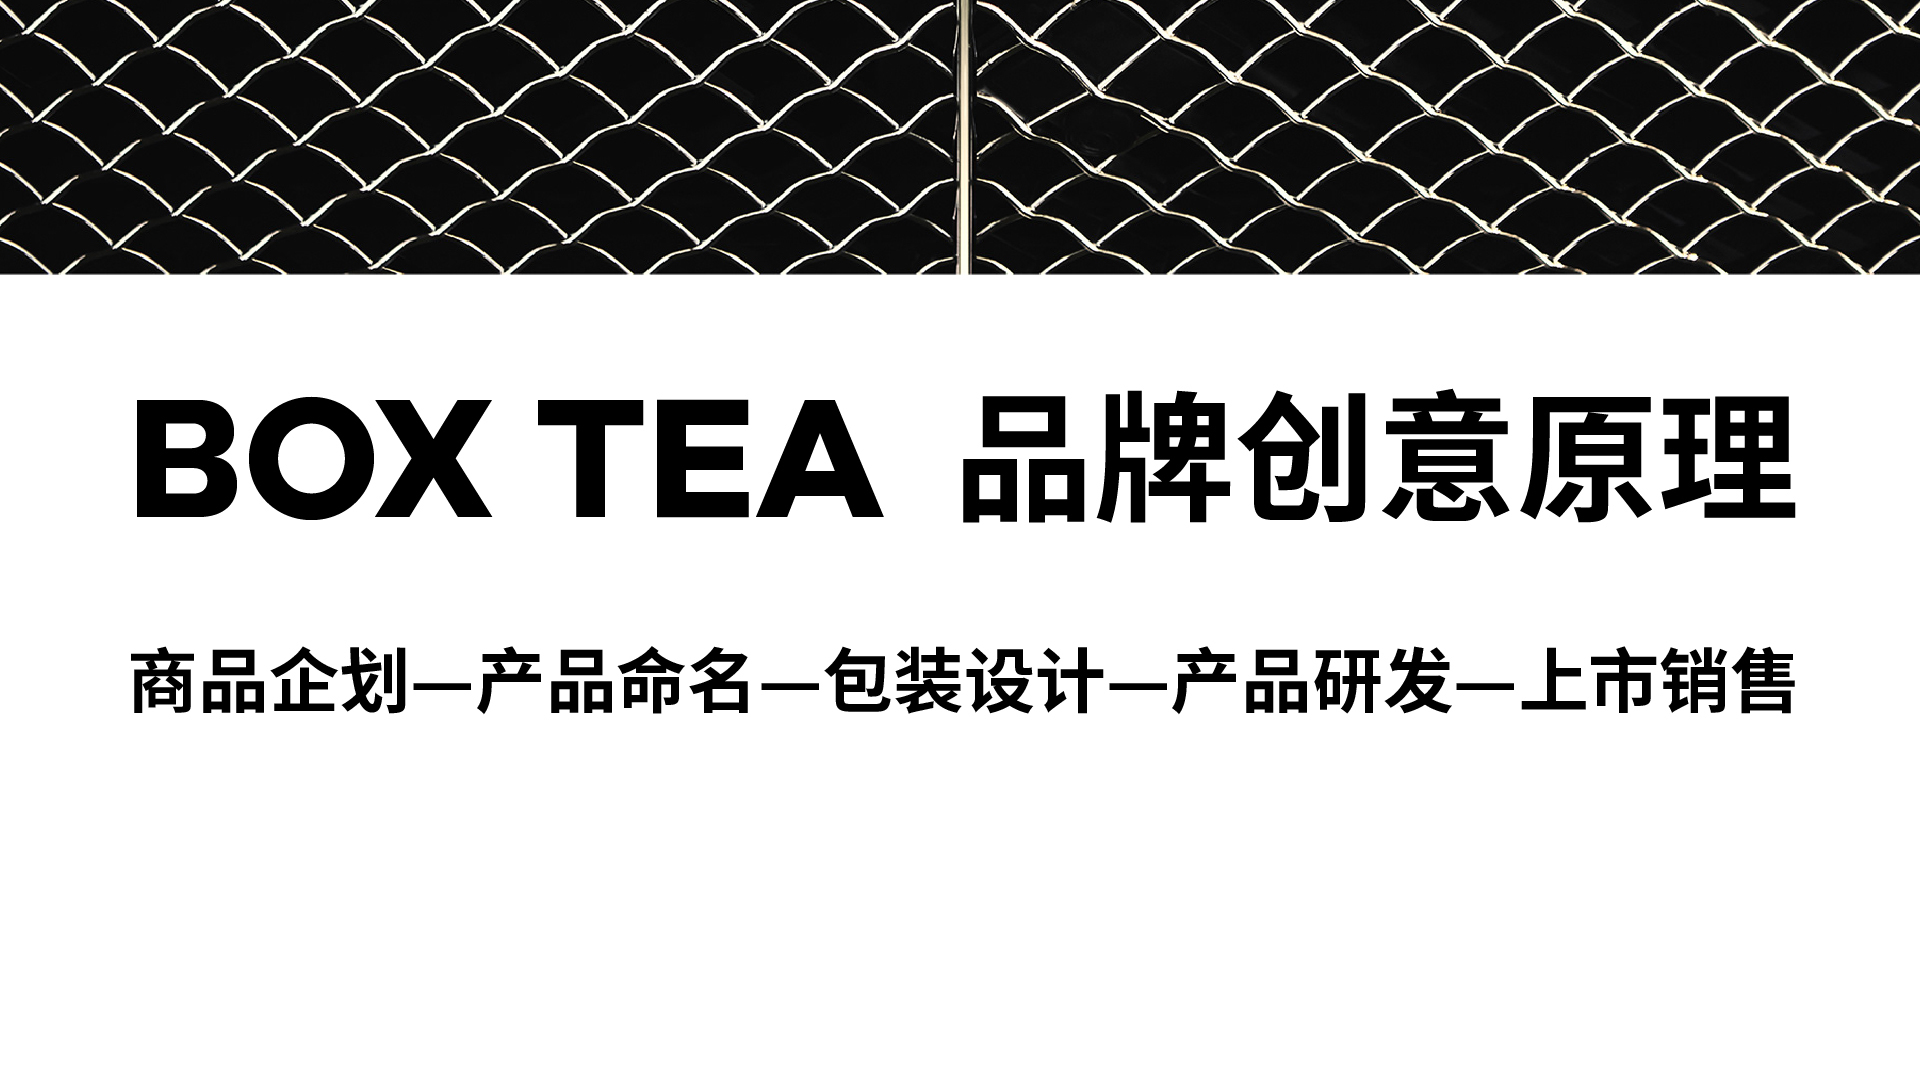 【产品包装设计】大B茶 | 喝好茶，找大B